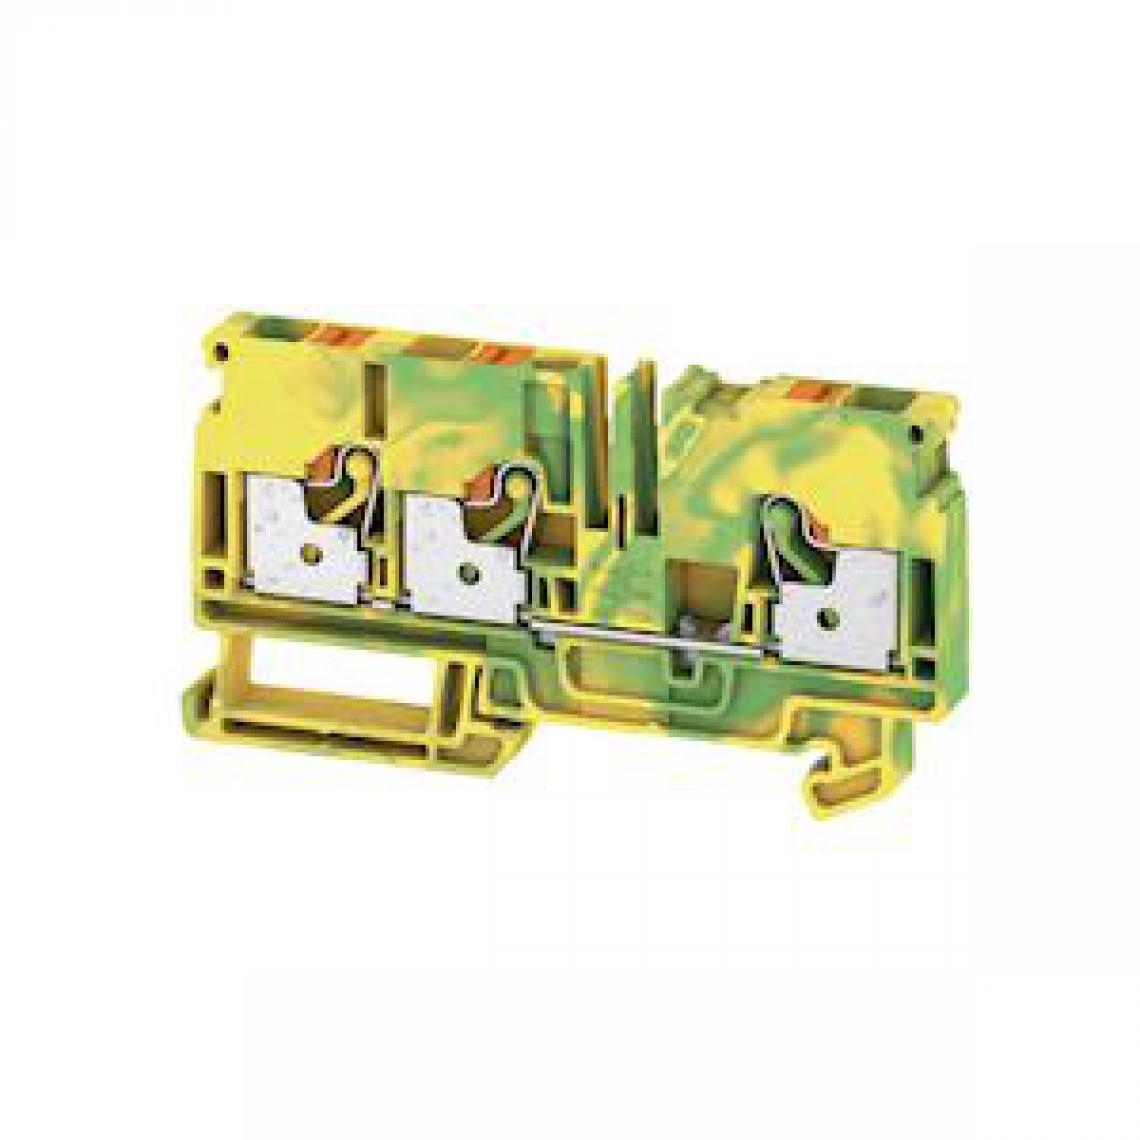 Weidmuller - bloc de jonction de passage - a3c - push in - 6 mm2 - vert / jaune - pe - weidmuller 1991850000 - Autres équipements modulaires